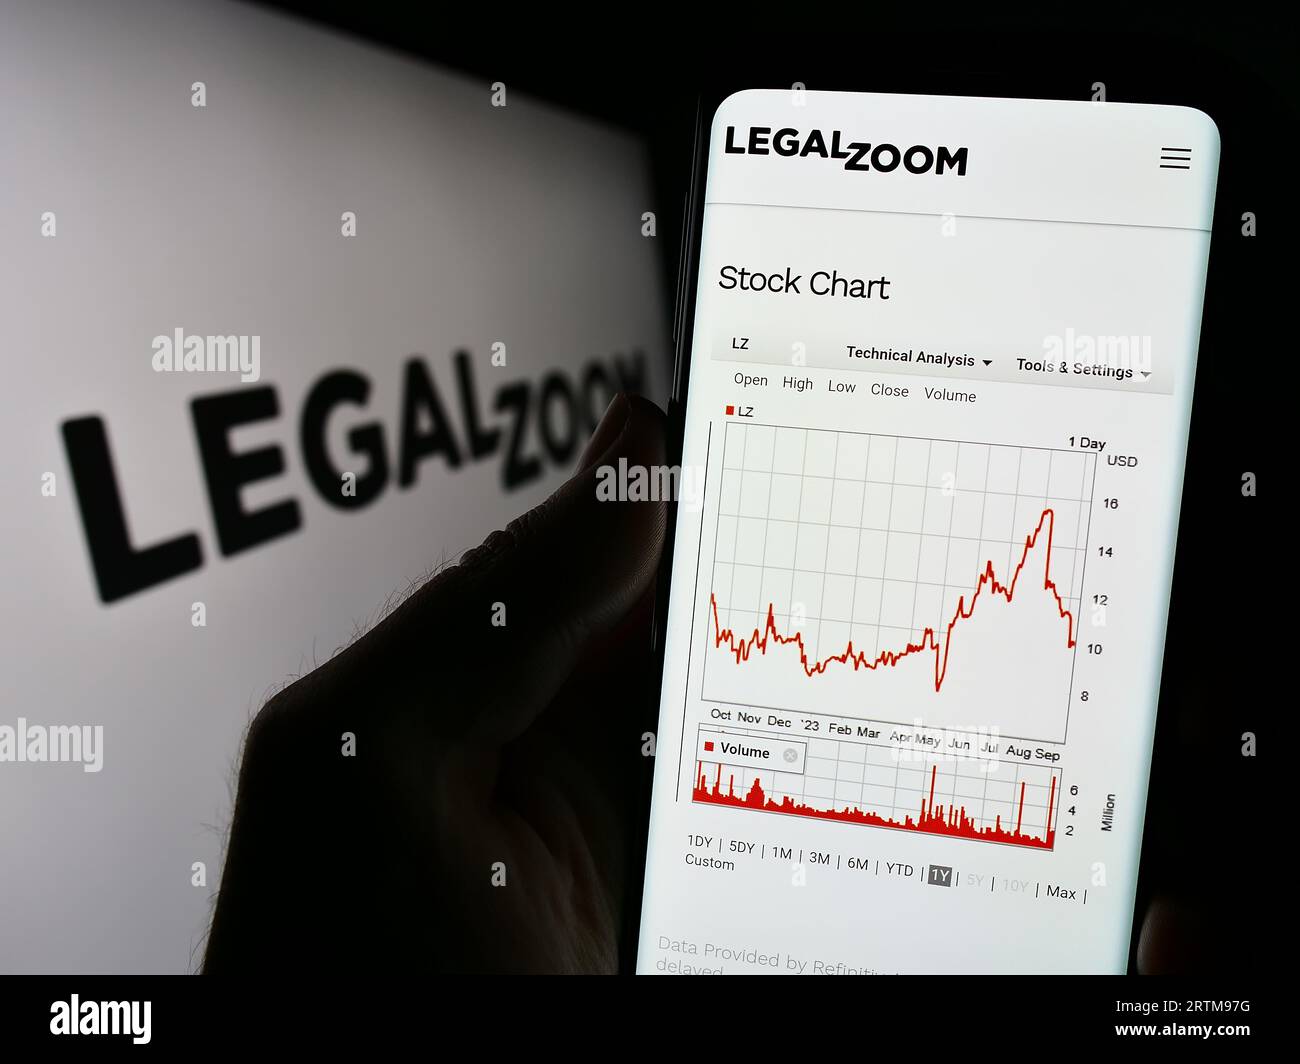 Personne détenant un smartphone avec le site Web de la société de technologie juridique américaine LegalZoom.com Inc. Sur l'écran avec logo. Concentrez-vous sur le centre de l'écran du téléphone. Banque D'Images